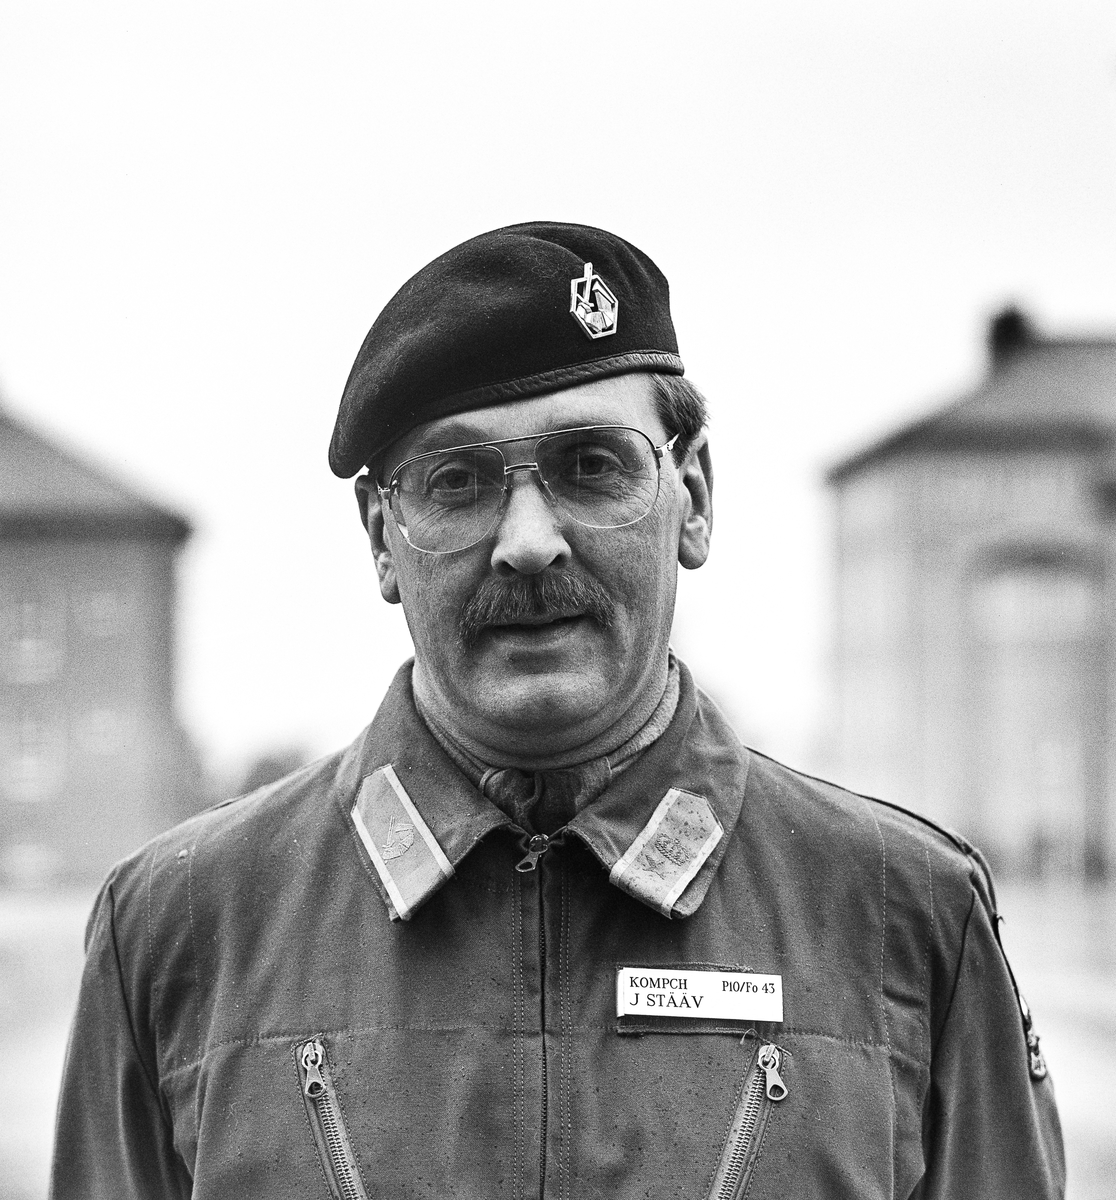 Chefen Liv-kompaniet den 16 oktober 1987 -- major Jan Stääv.

OBS! två bilder.